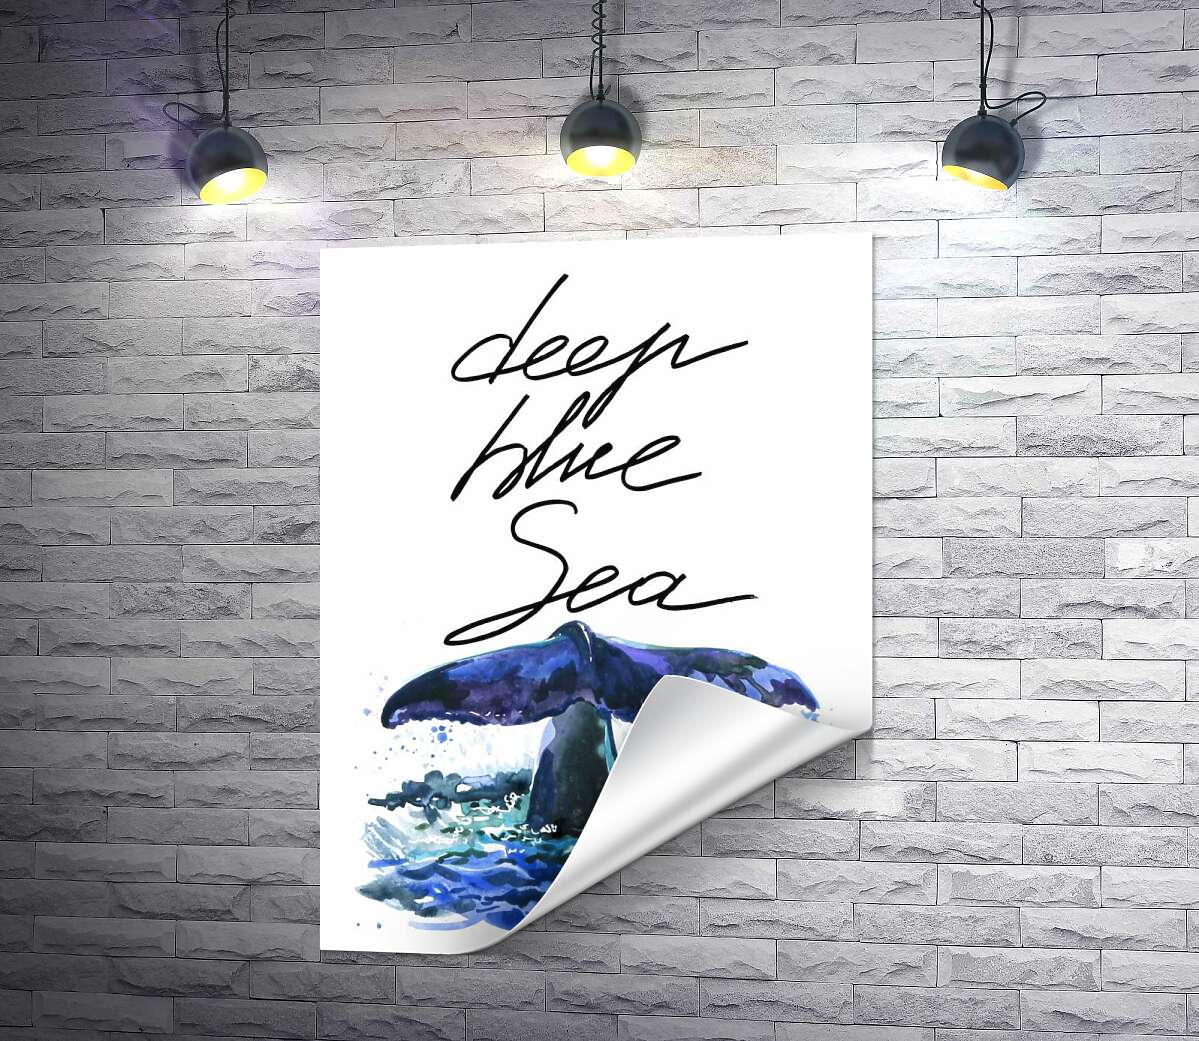 печать Хвост кита над водной поверхностью рядом с надписью "deep blue sea"